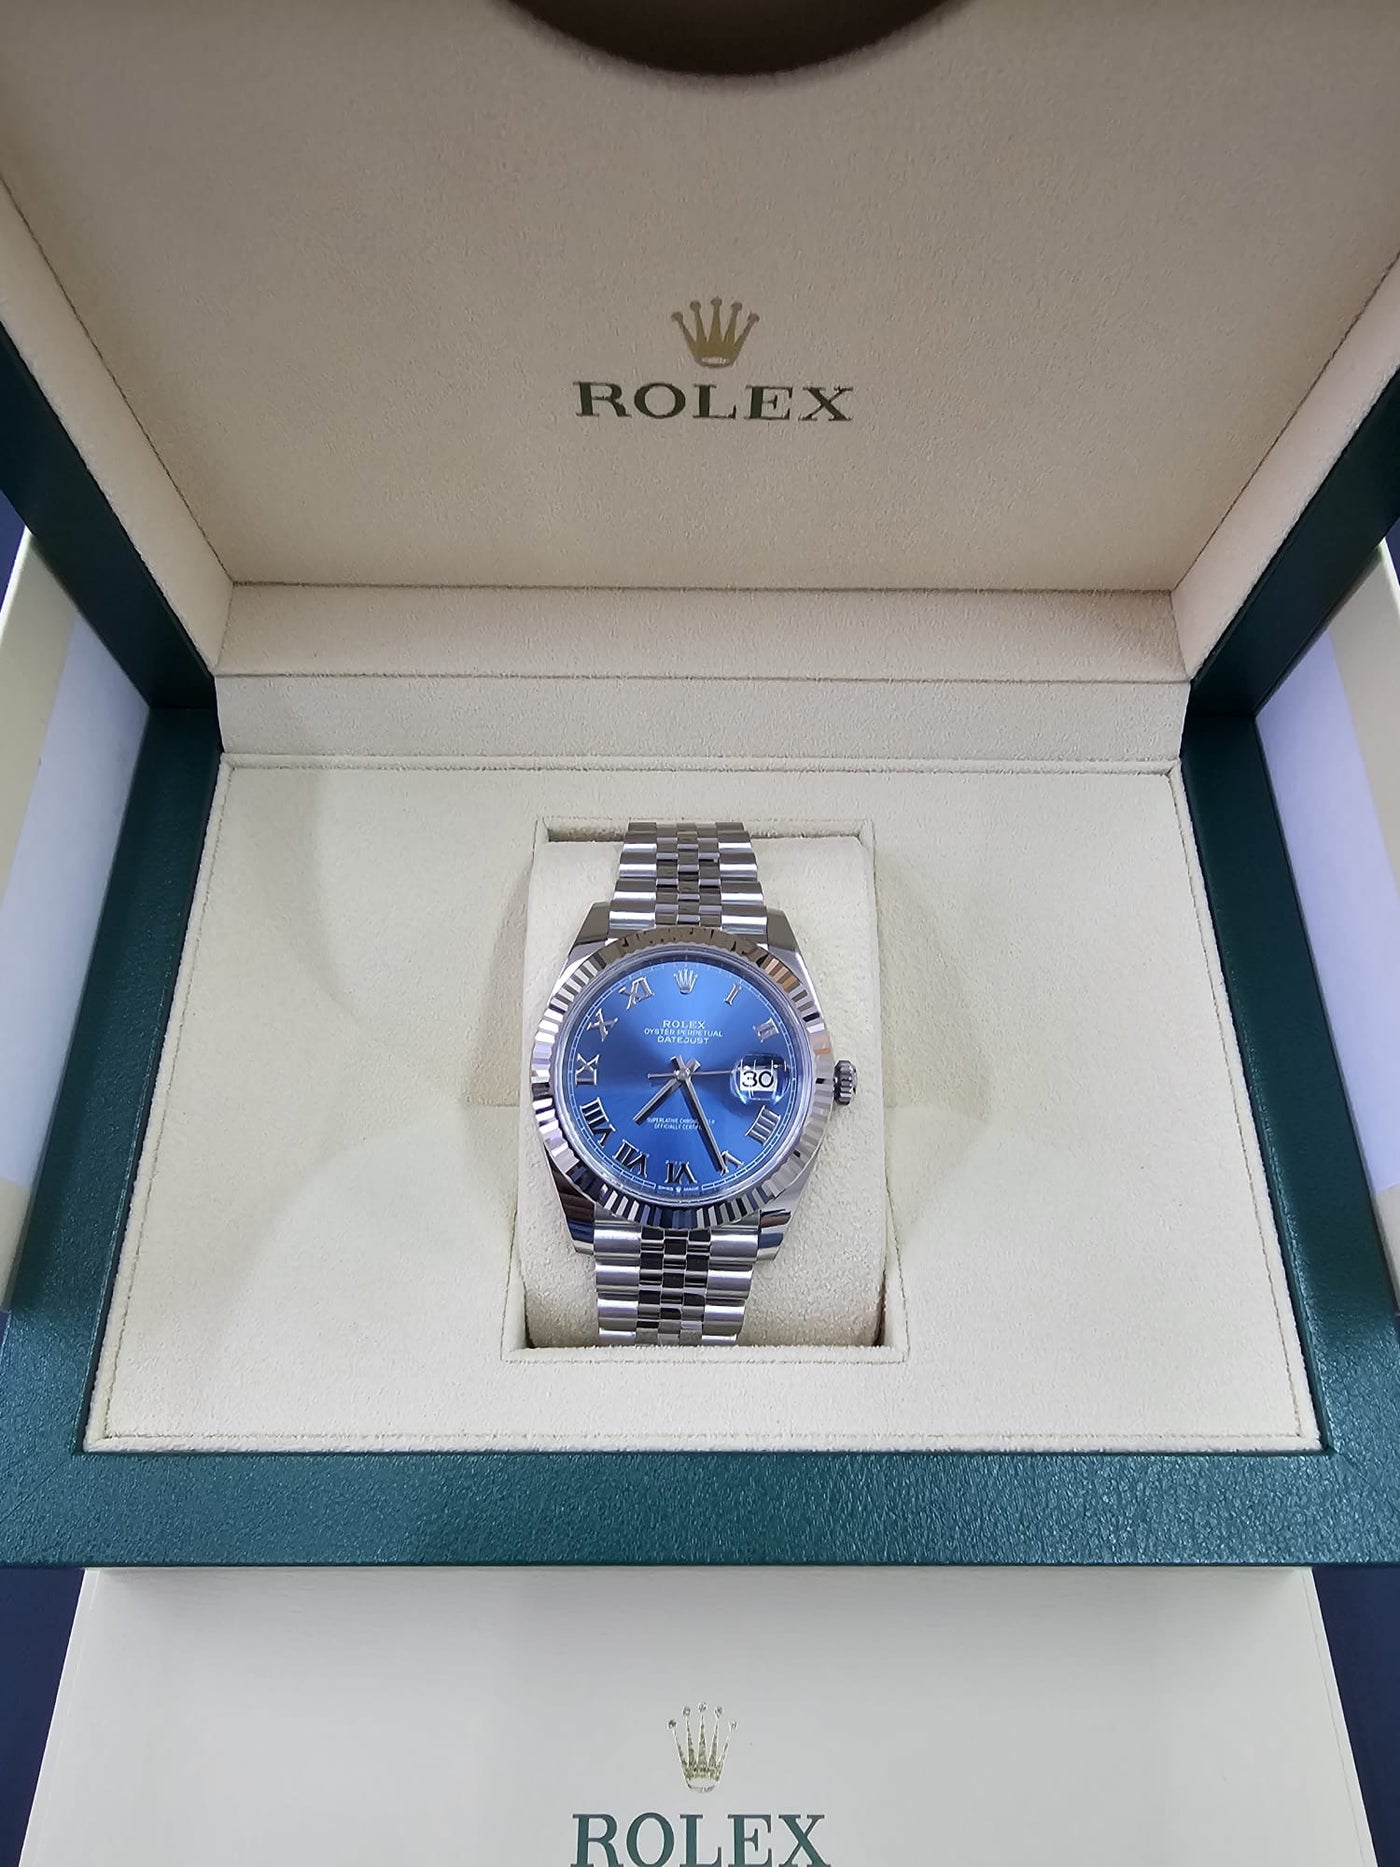 Rolex Steel and White Gold Rolesor Datejust 41 watch - Fluted Bezel - Blue Roman Dial - Jubilee Bracelet - 126334 blrj